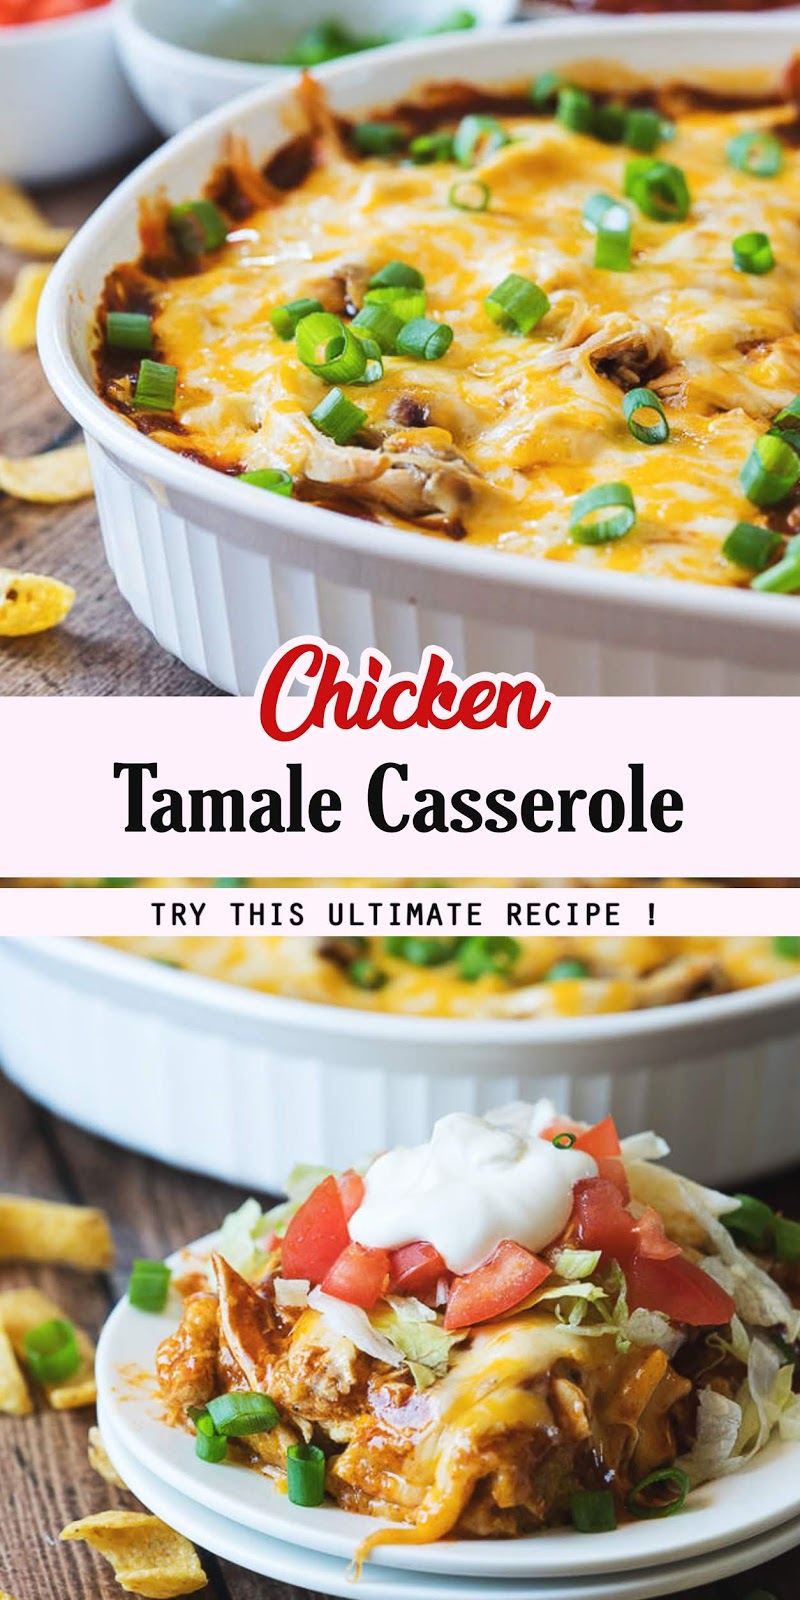 Chicken Tamale Casserole - JUMAT WAWAN